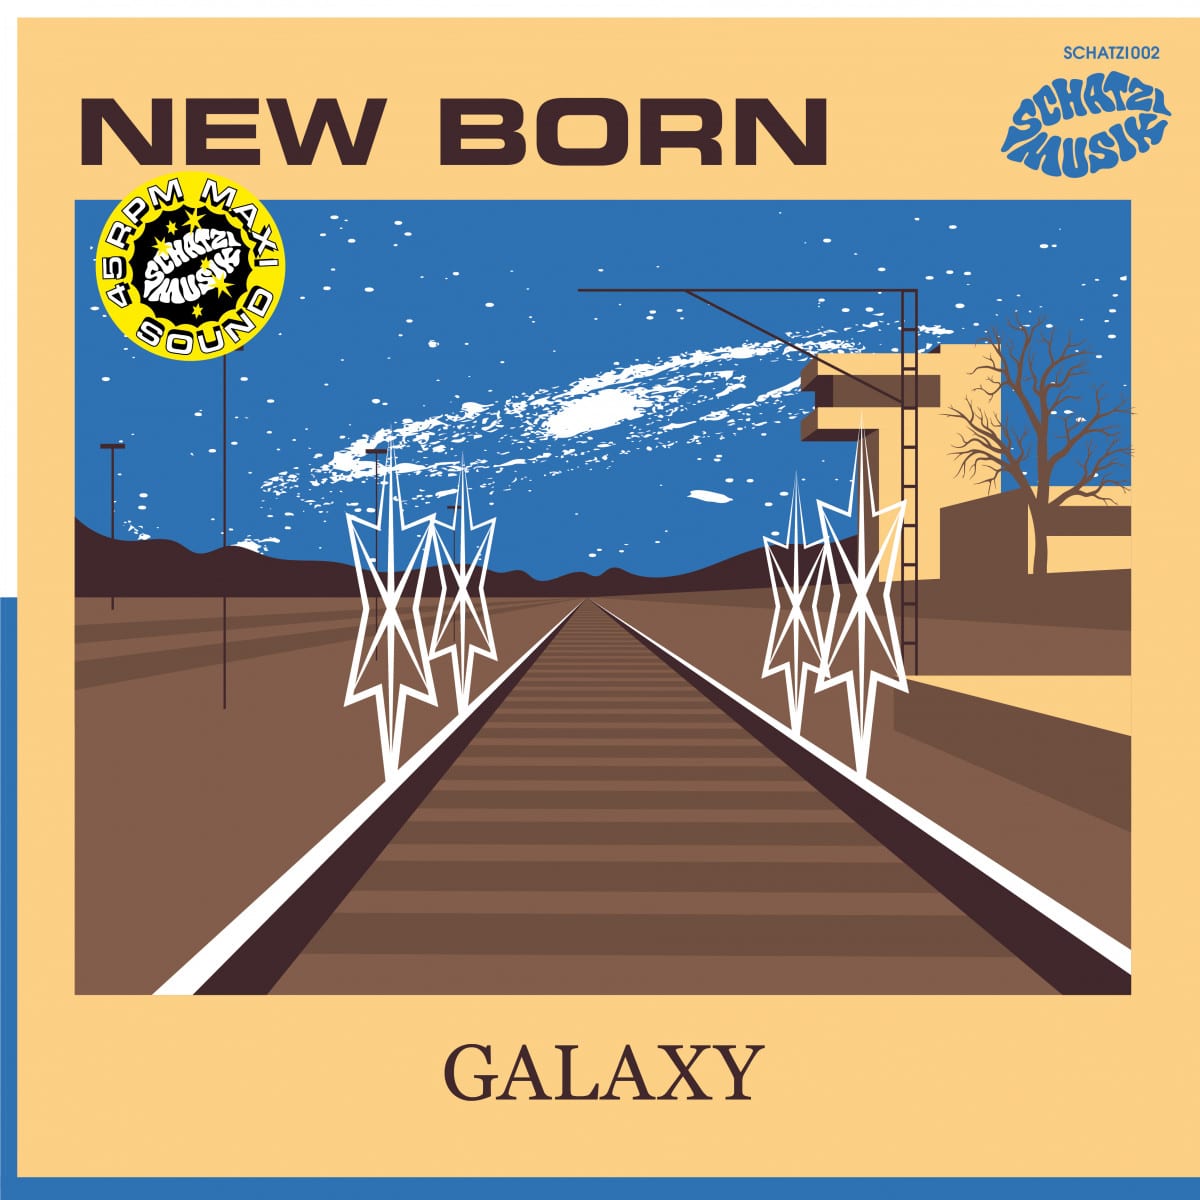 New Born - Galaxy EP - SCHATZI002 - SCHATZI MUZIK